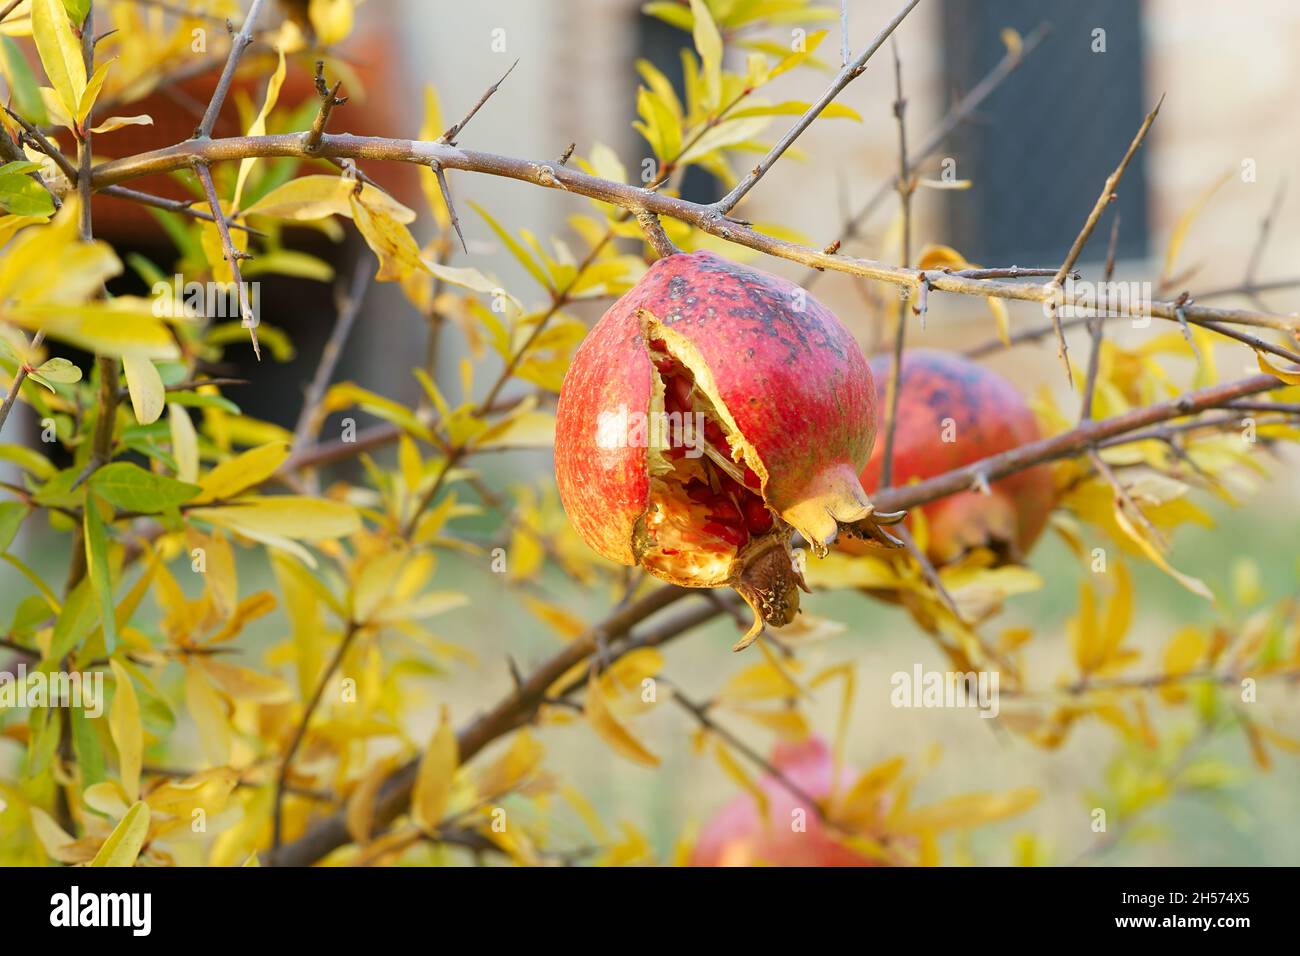 Se divide la granada abierta, con semillas jugosas rojas dentro de ella, colgando en la rama verde en el jardín en San Giovanni d'Asso, Siena, Toscana, Italia Foto de stock